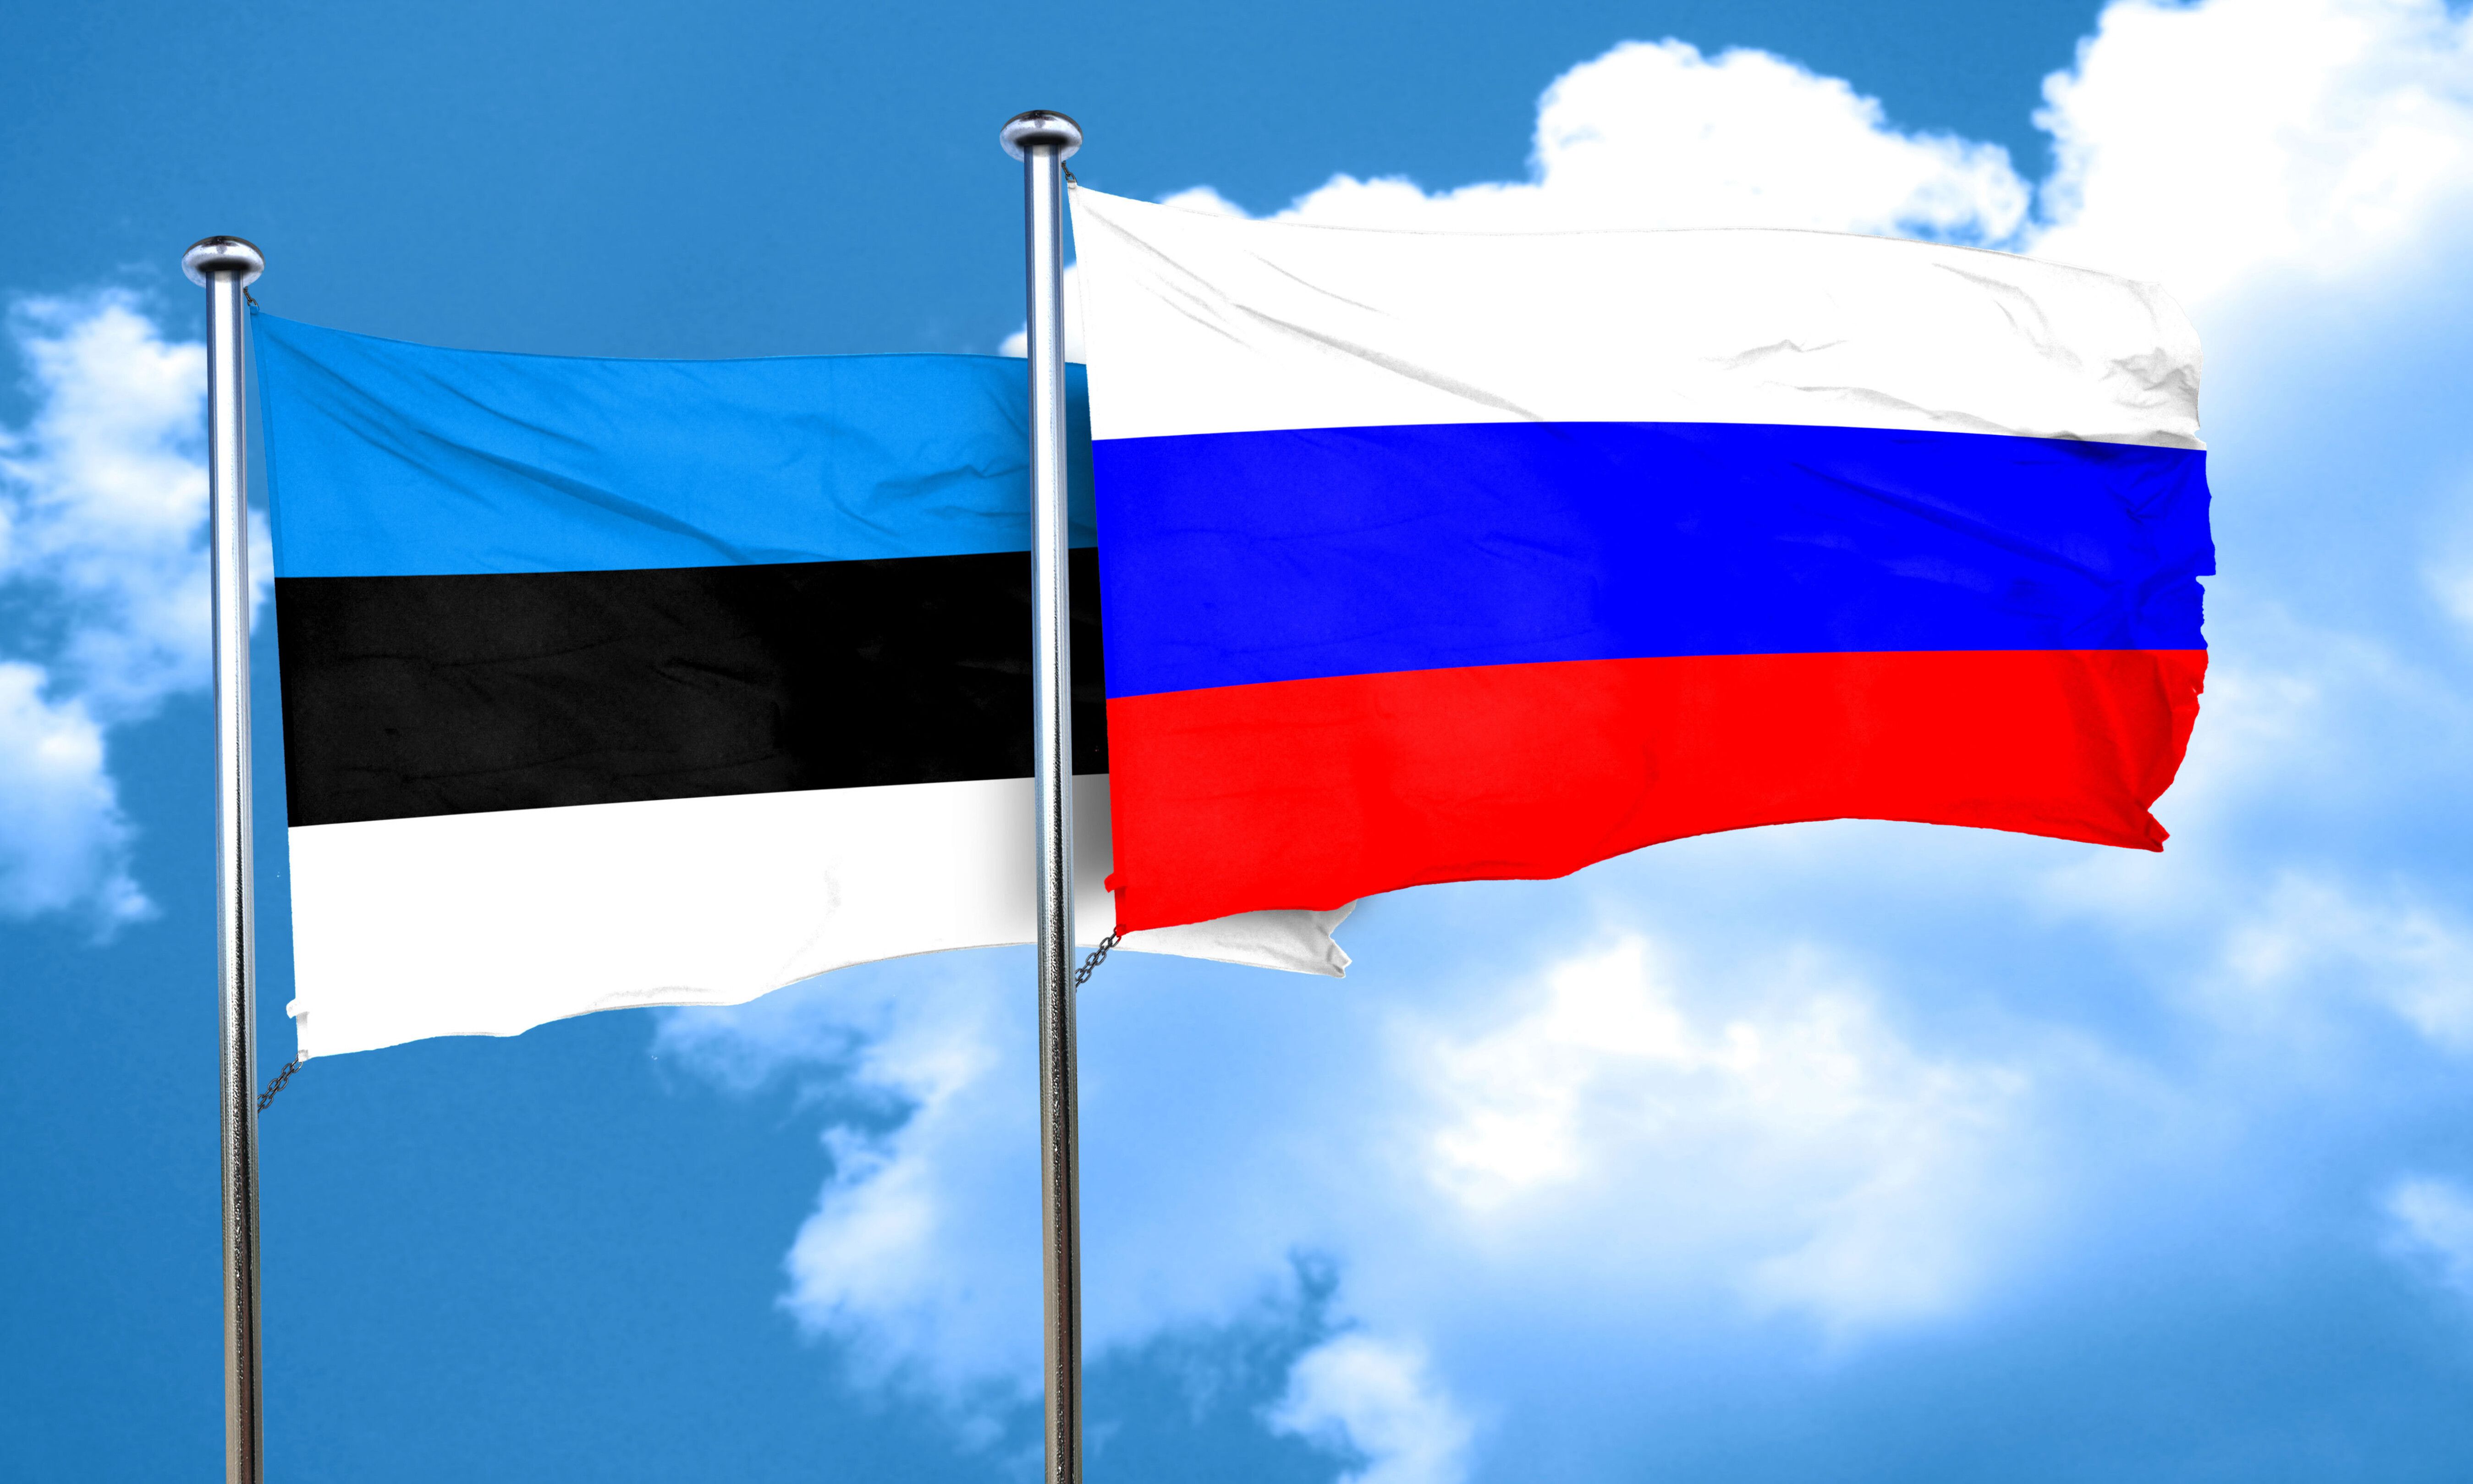 Krieg in der Ukraine - Russland und Estland weisen jeweils ihre Botschafter aus